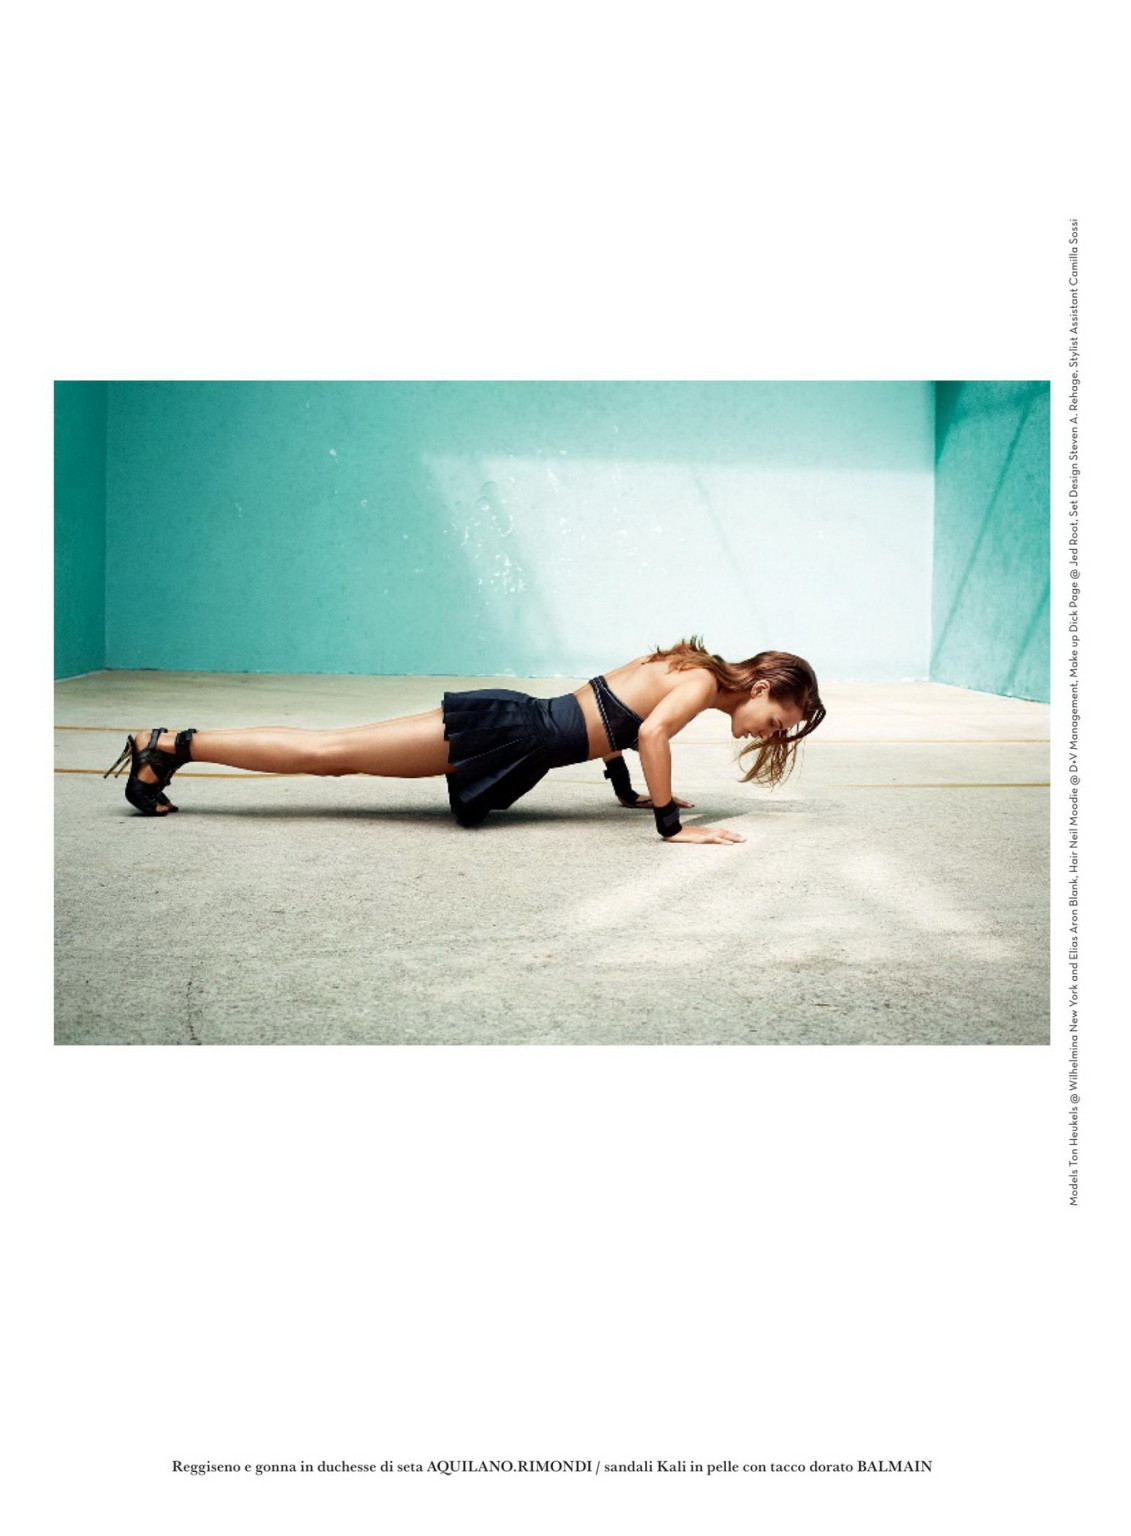 Edita vilkeviciute zeigt ihre großen Brüste im Flair Magazin Italien Mai 2015 ist
 #75165205